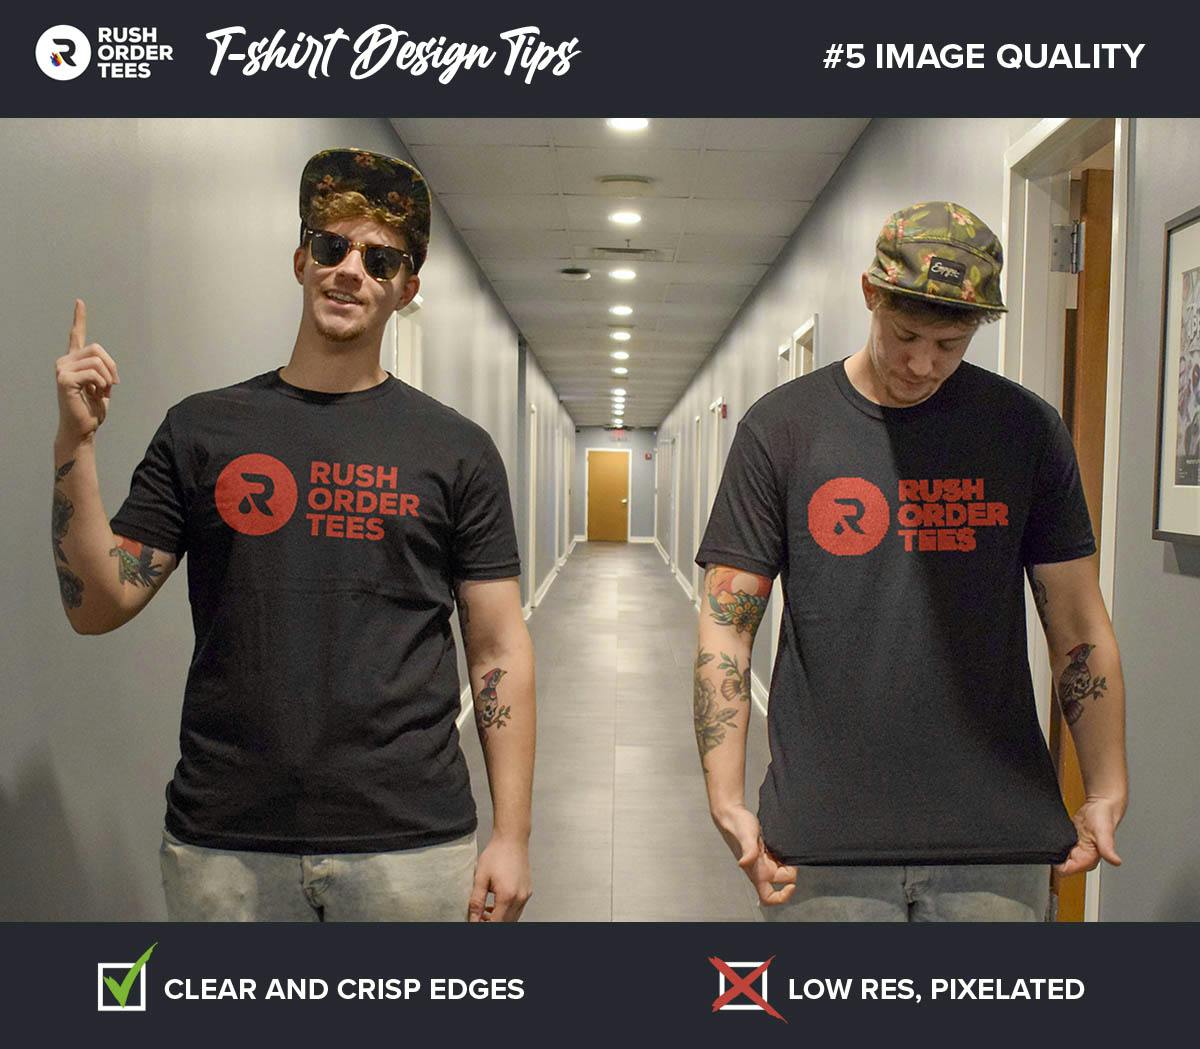 Grønthandler Handel halvleder 10 T-Shirt Design Tips For Better Results